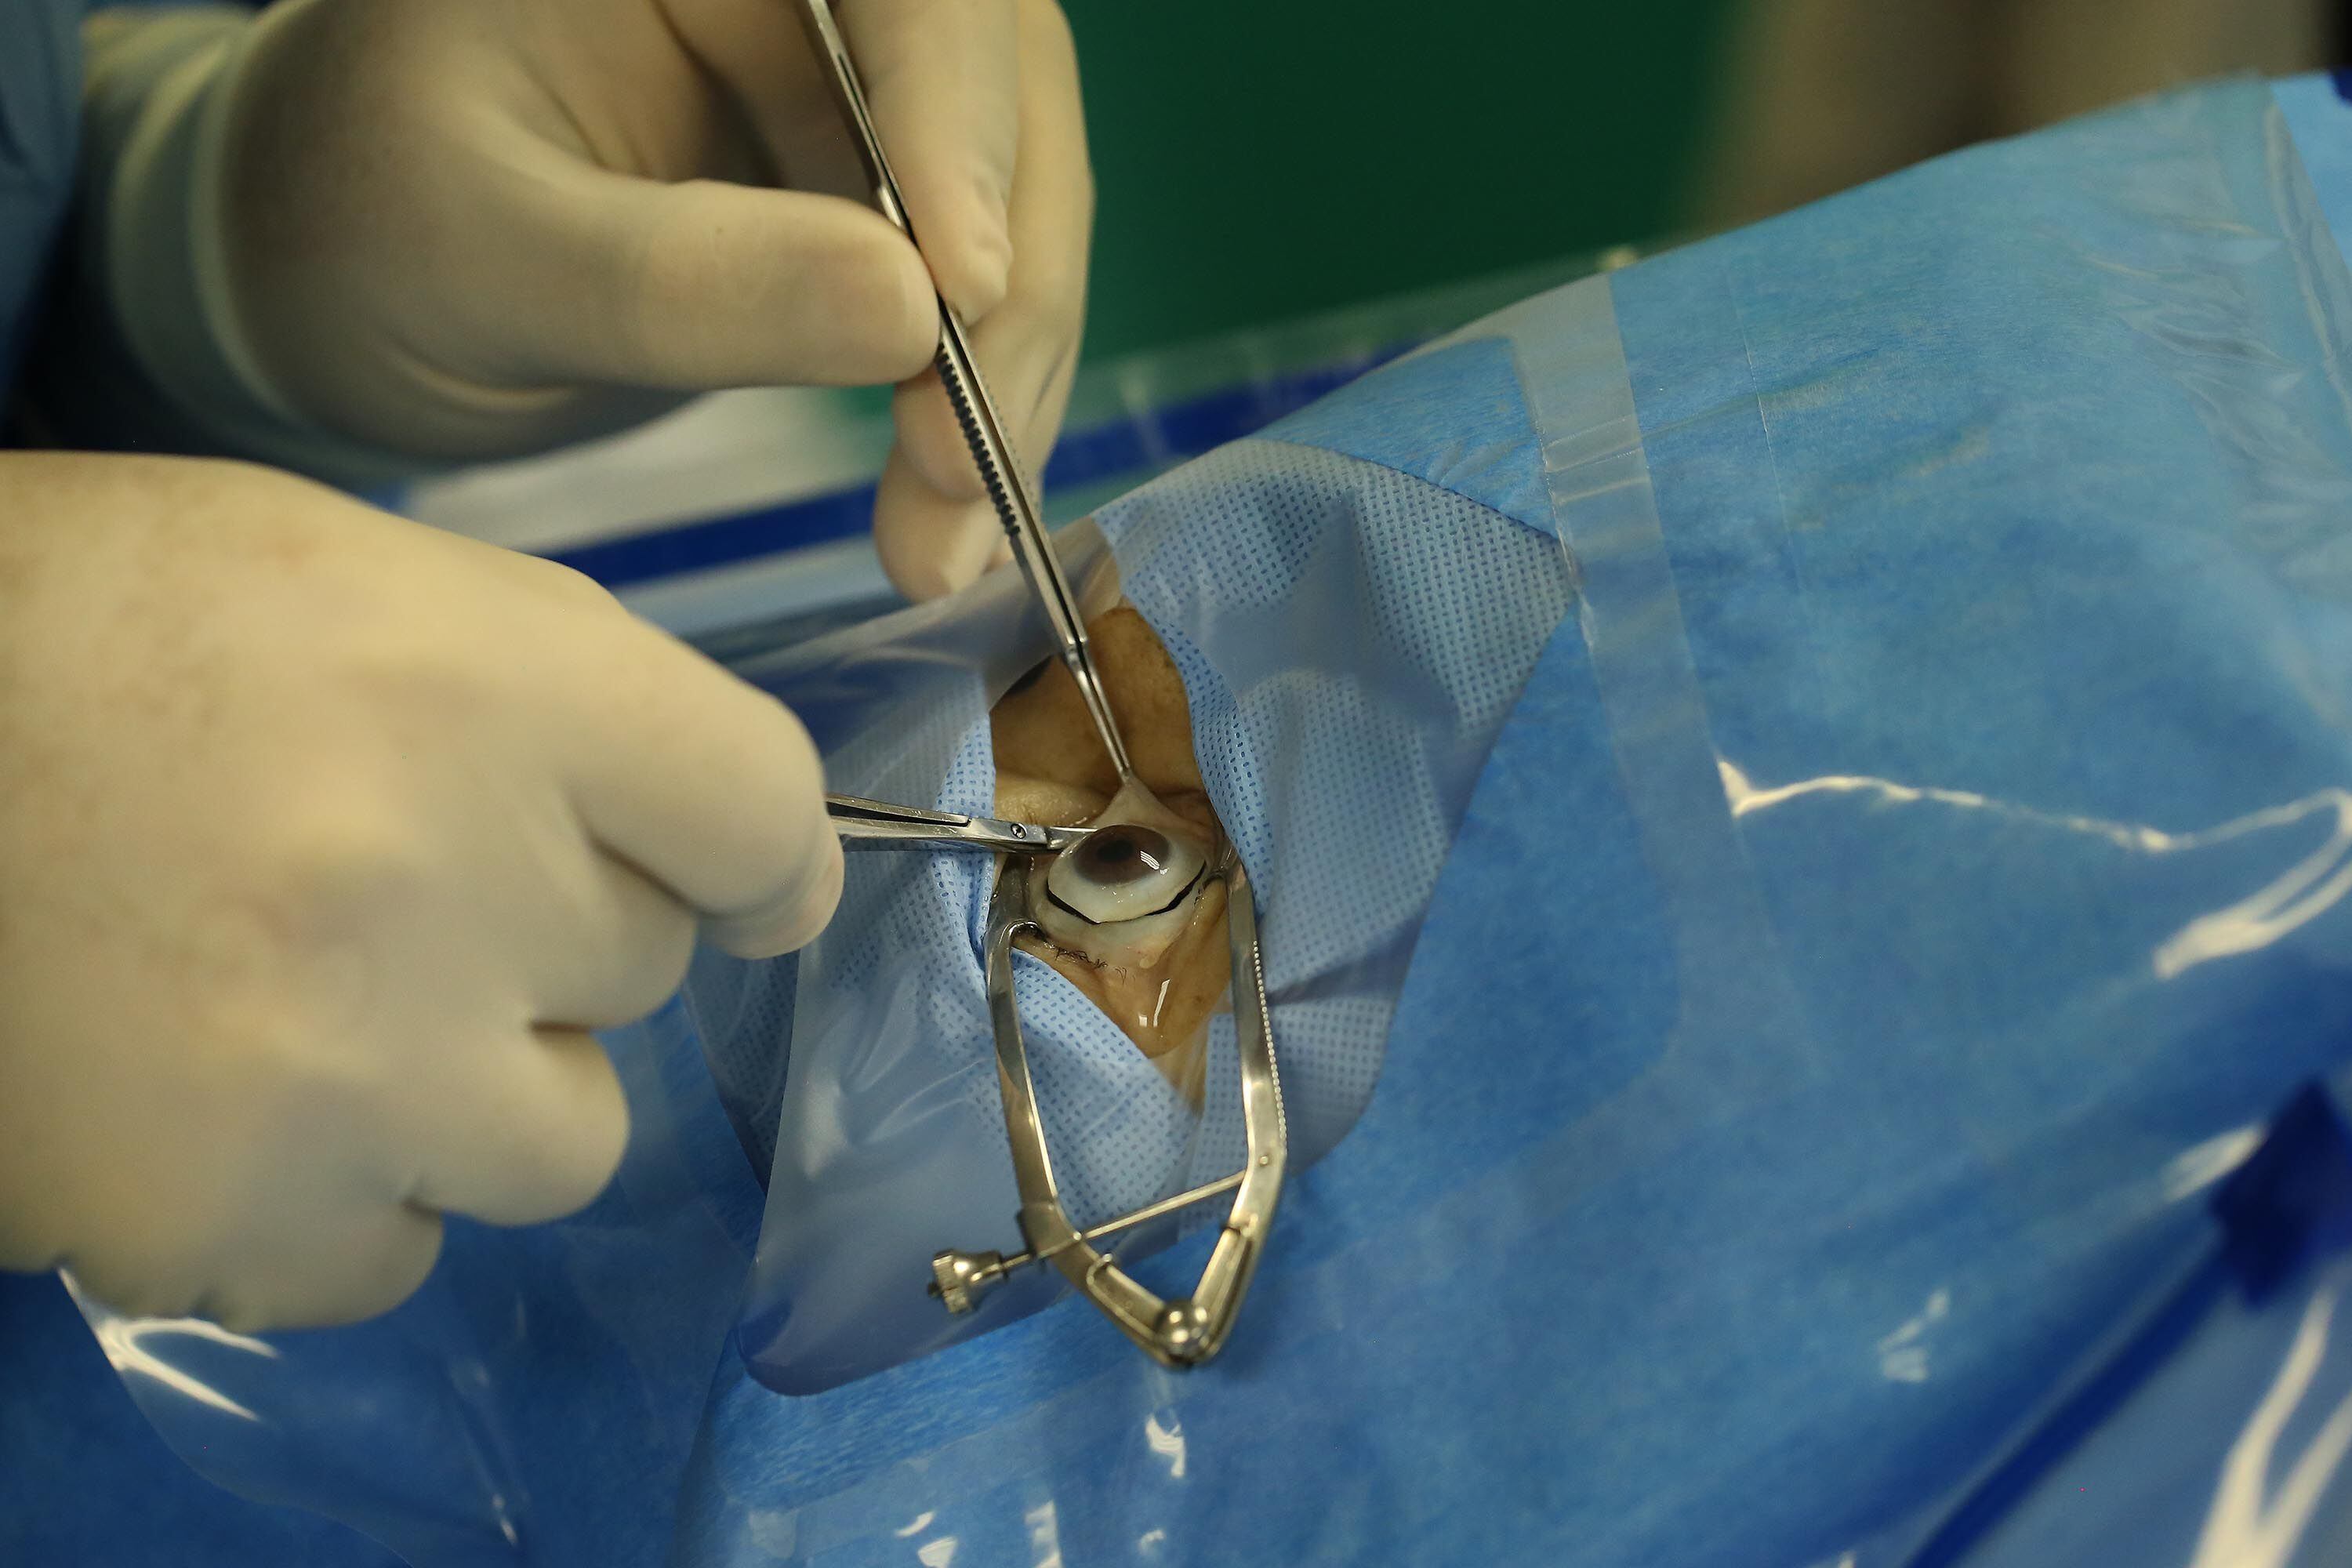 El Hospital San Rafael de Alajuela es uno de los centros procuradores de órganos de la CCSS. En noviembre del 2017, realizaron esta cirugía de extracción de córneas, un procedimiento que no tarda más de 30 minutos.